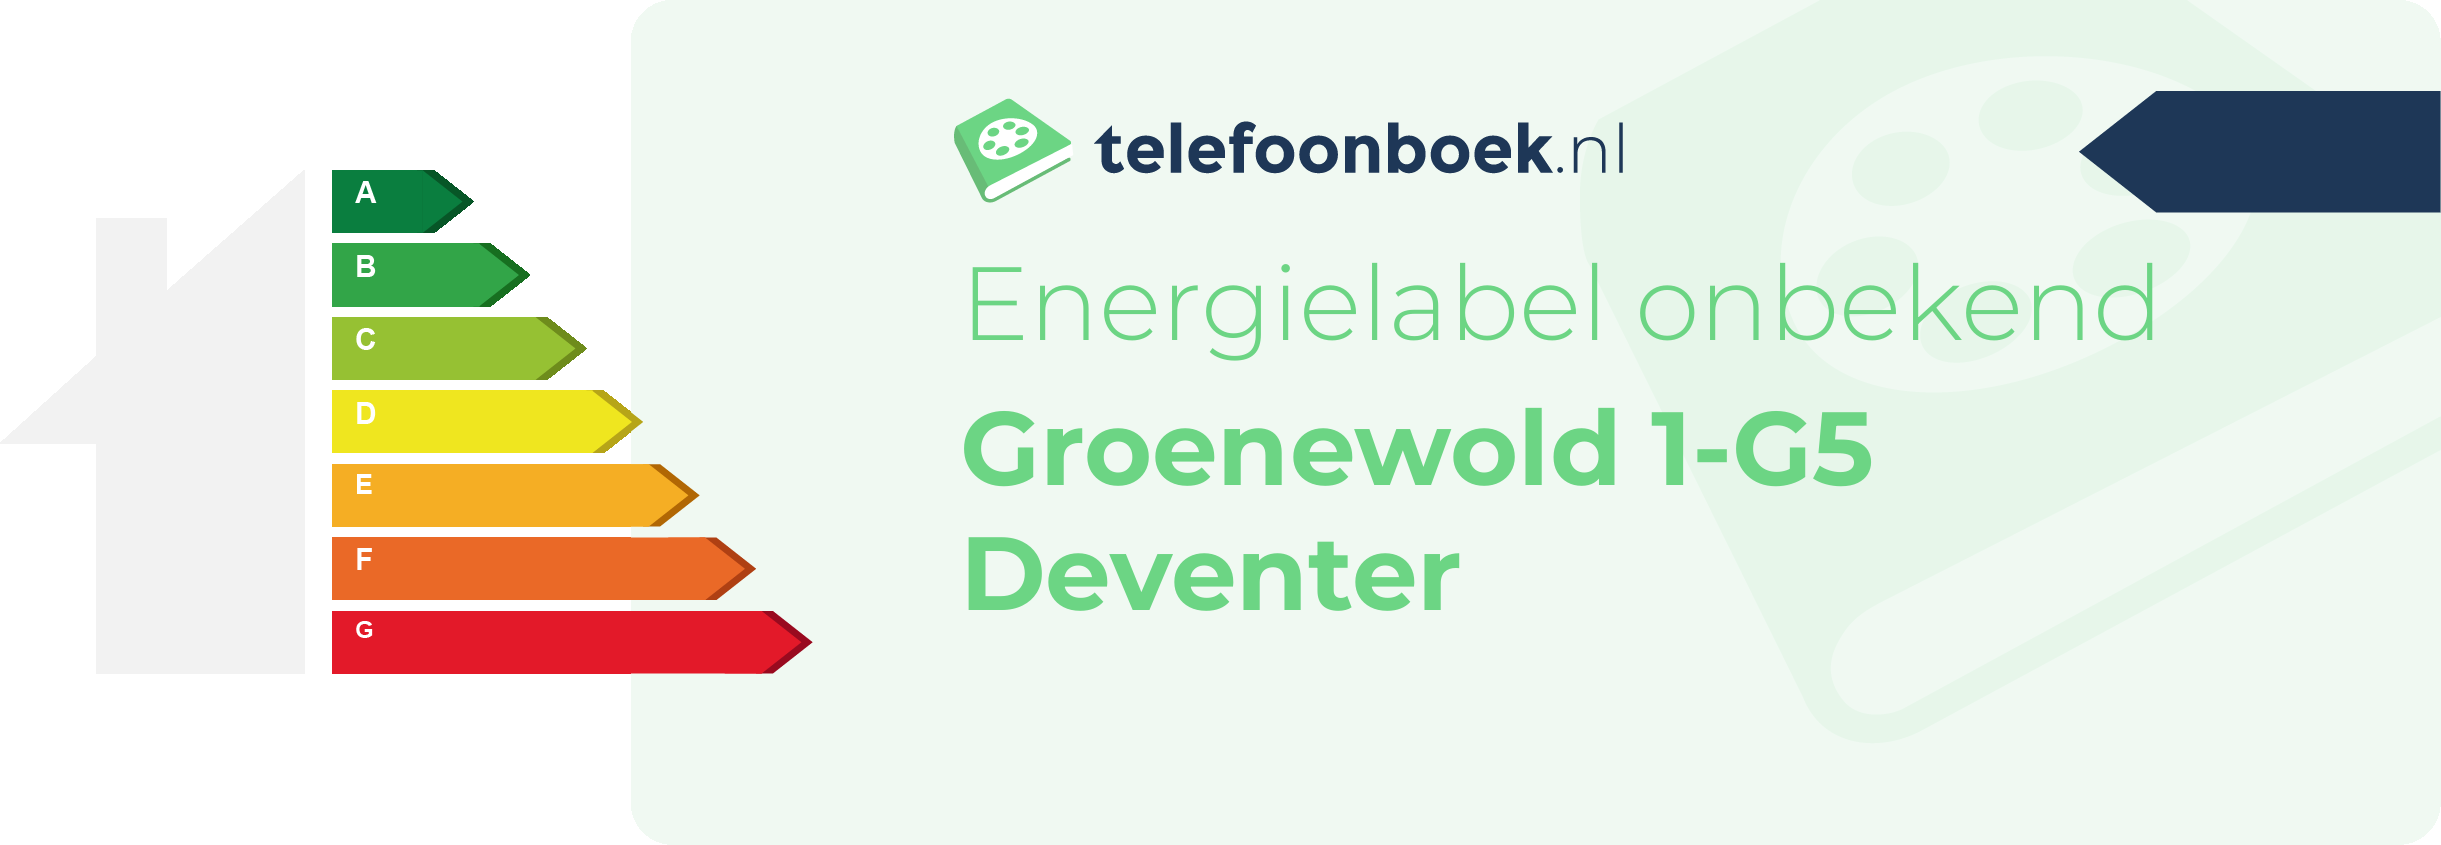 Energielabel Groenewold 1-G5 Deventer